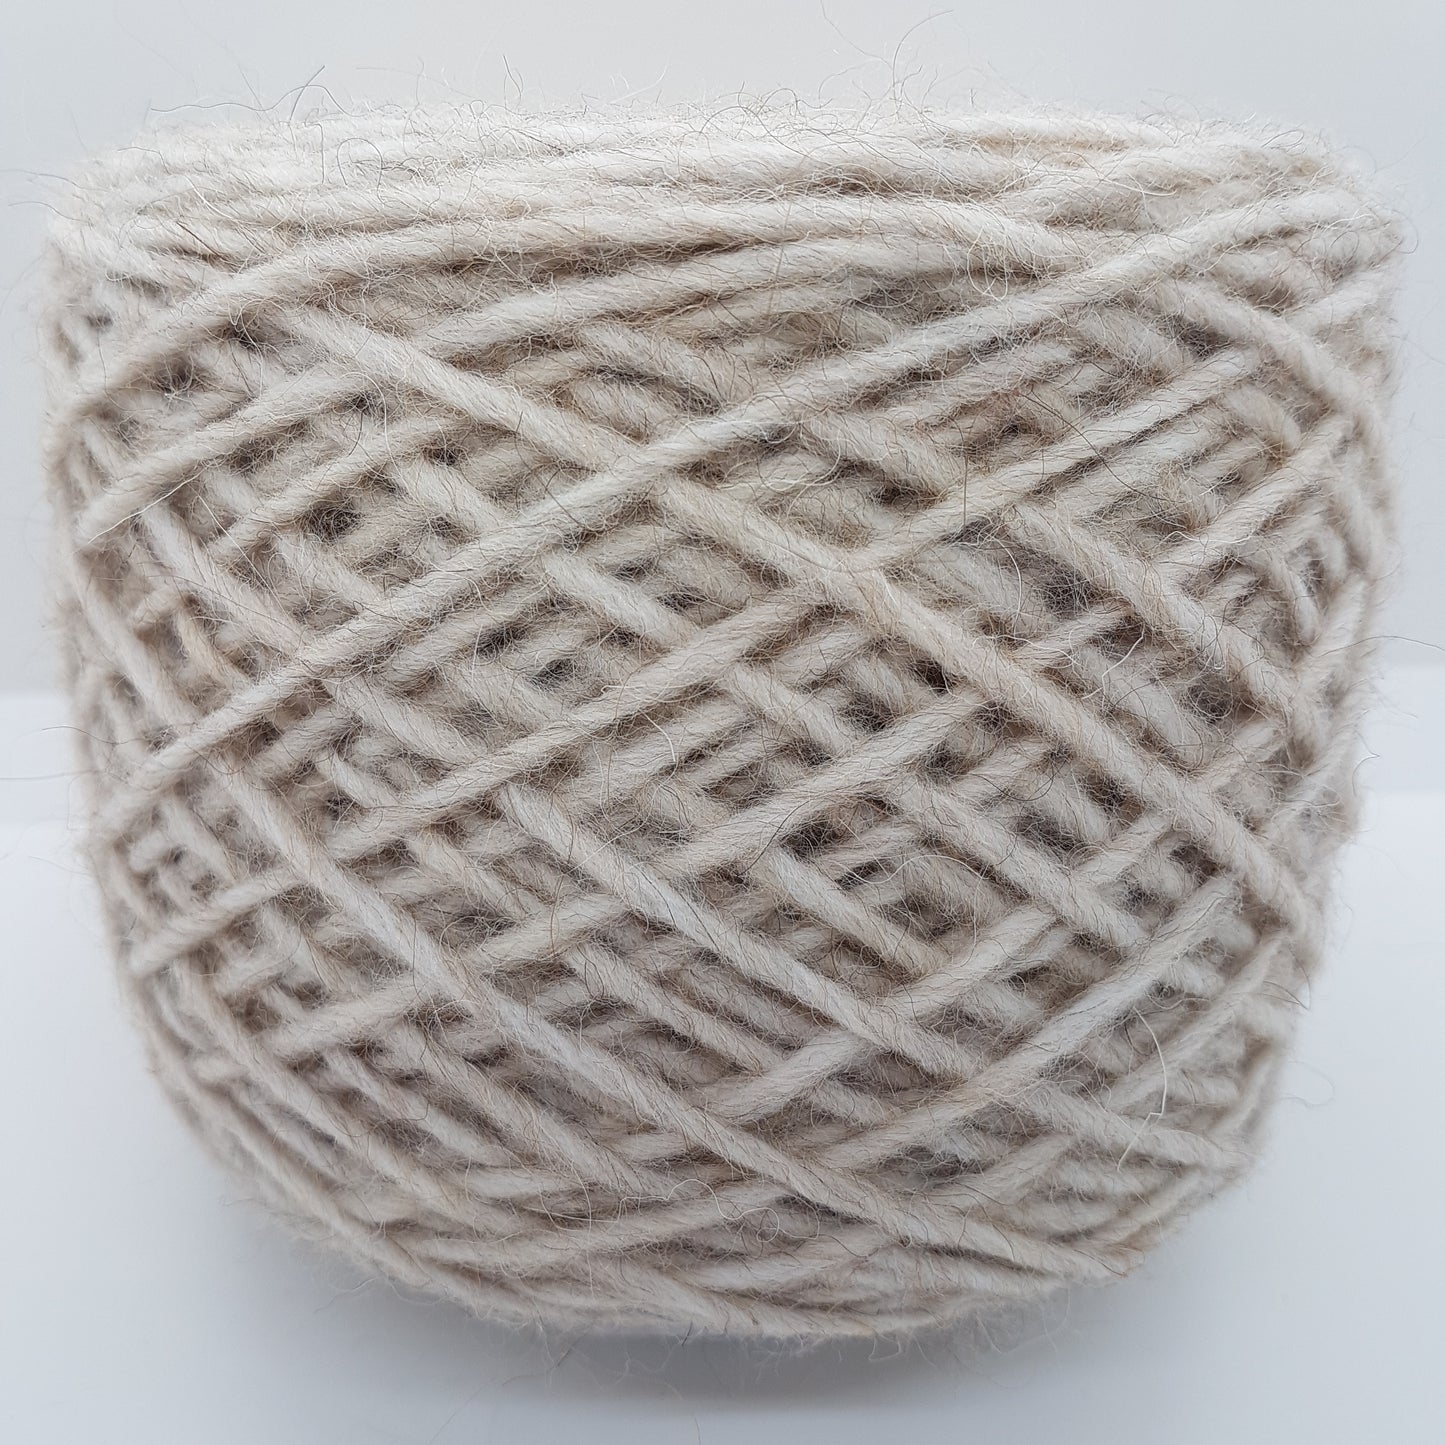 100g vierge laine alpaca fil italien couleur italienne écru blanc sale beige beige mélange N.223